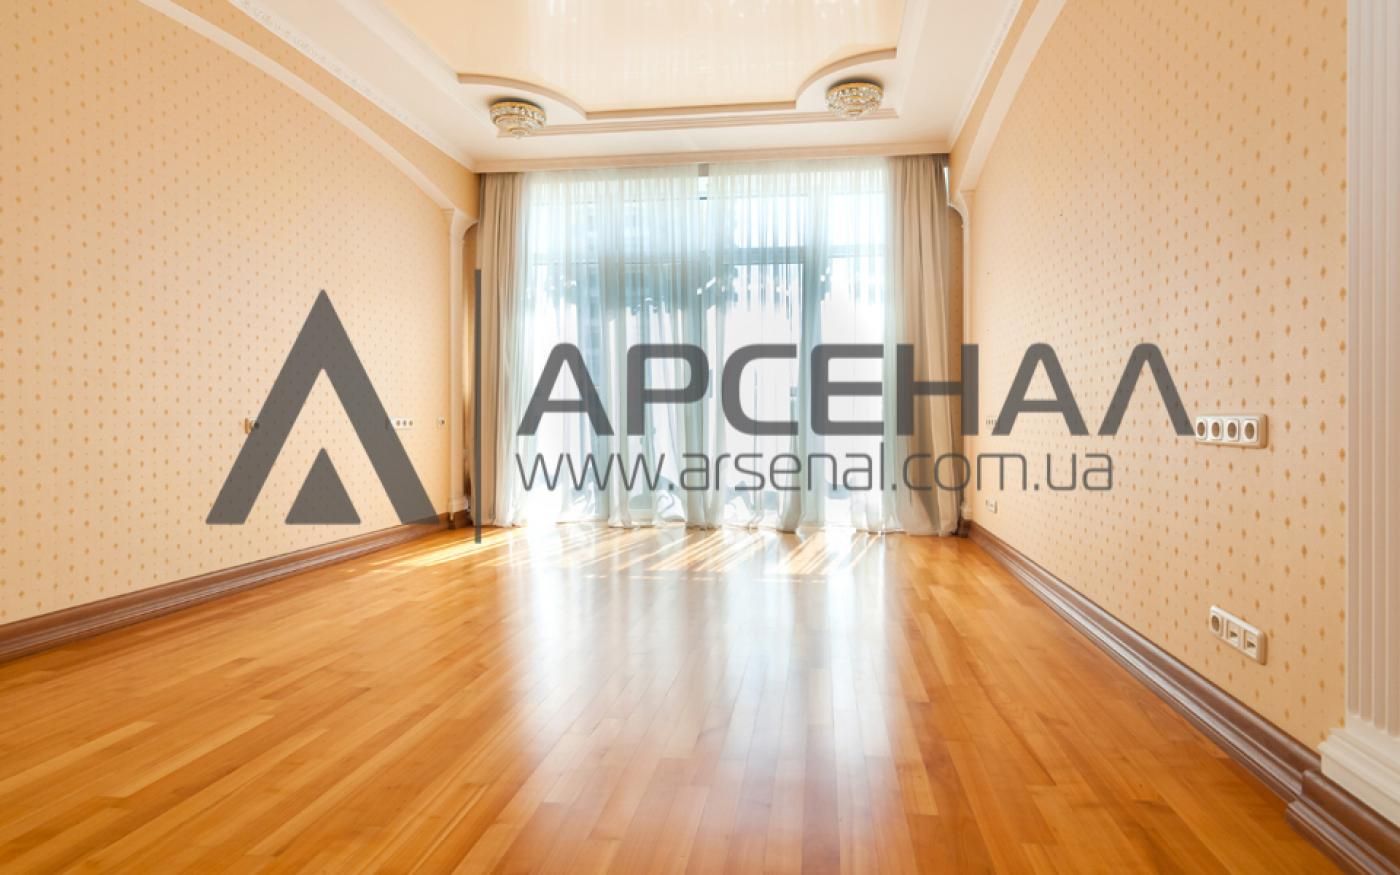 Продаж або обмін на квартиру/будинок в місті або в придмісті Київа